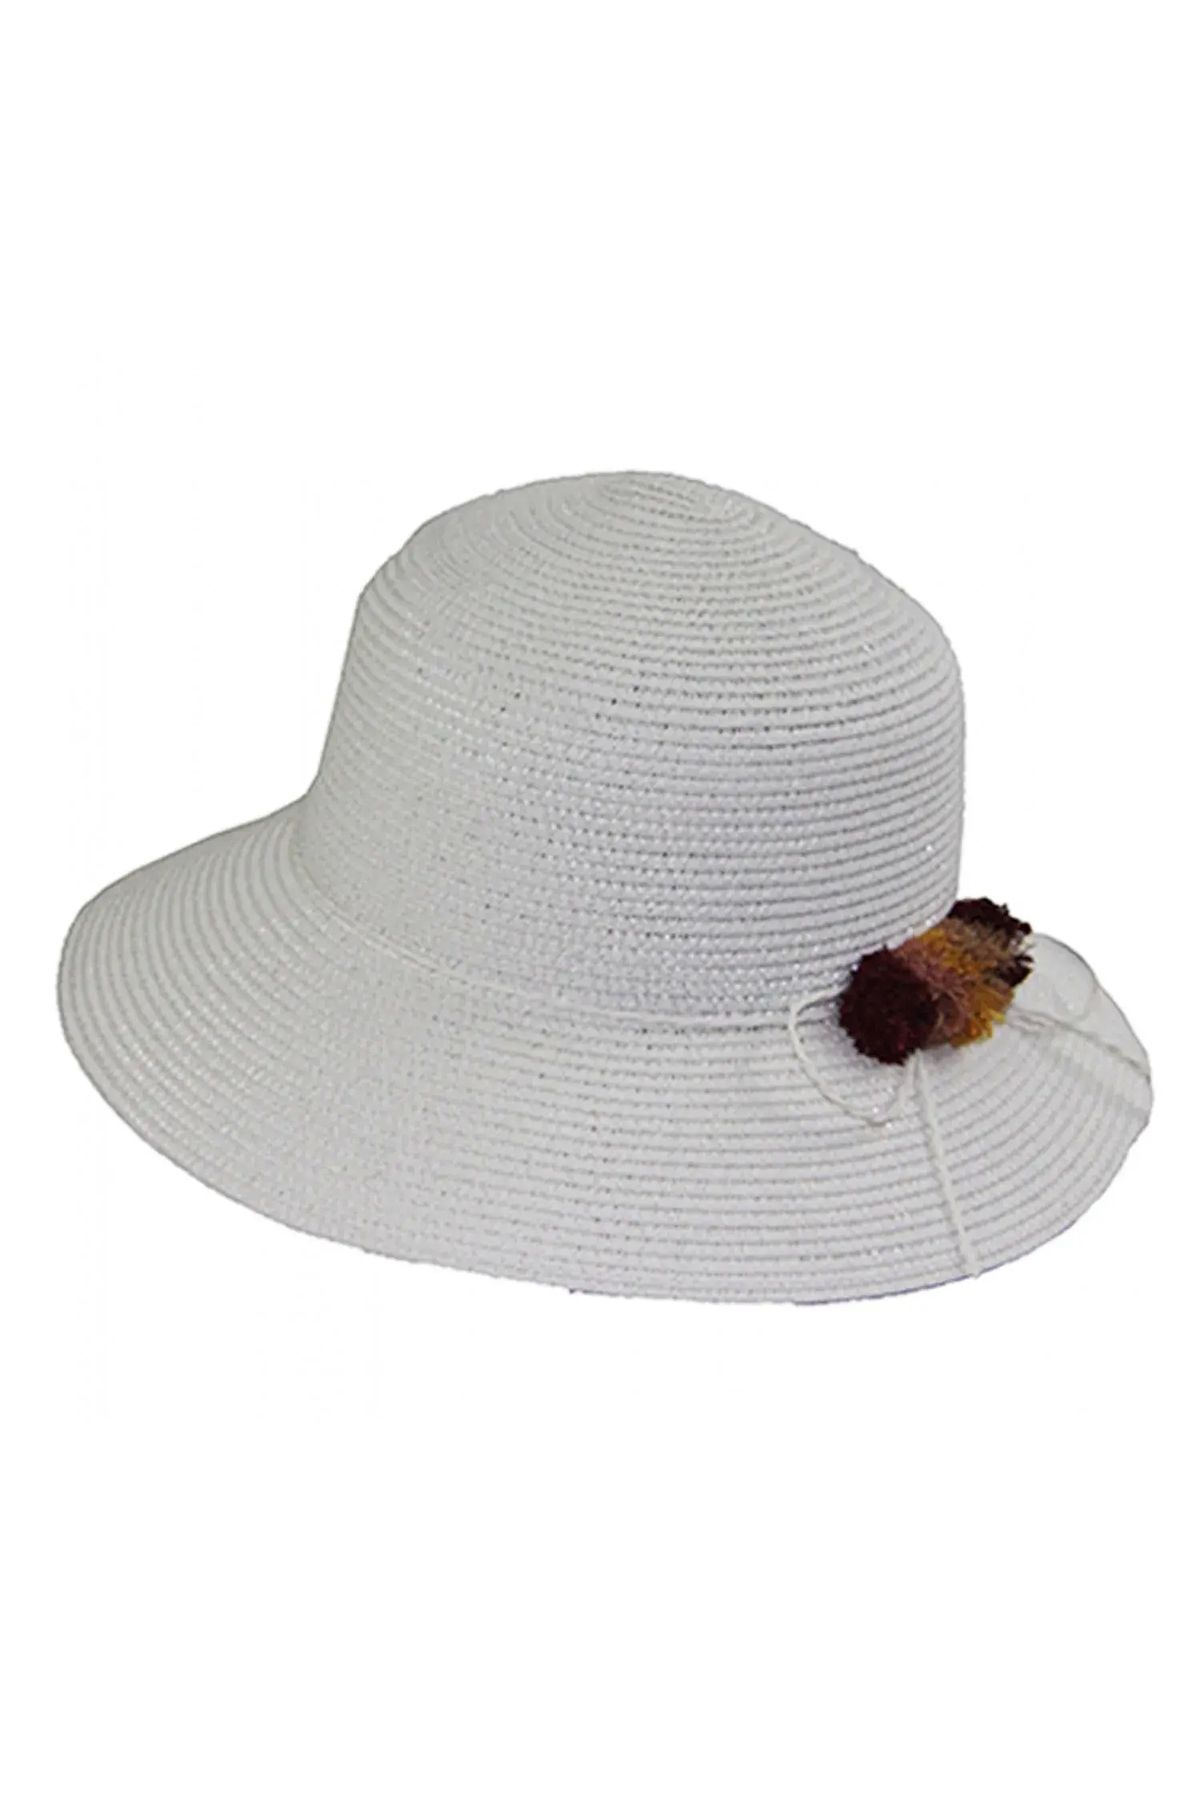 Bay Şapkacı Kadın Hasır Şapka 3851